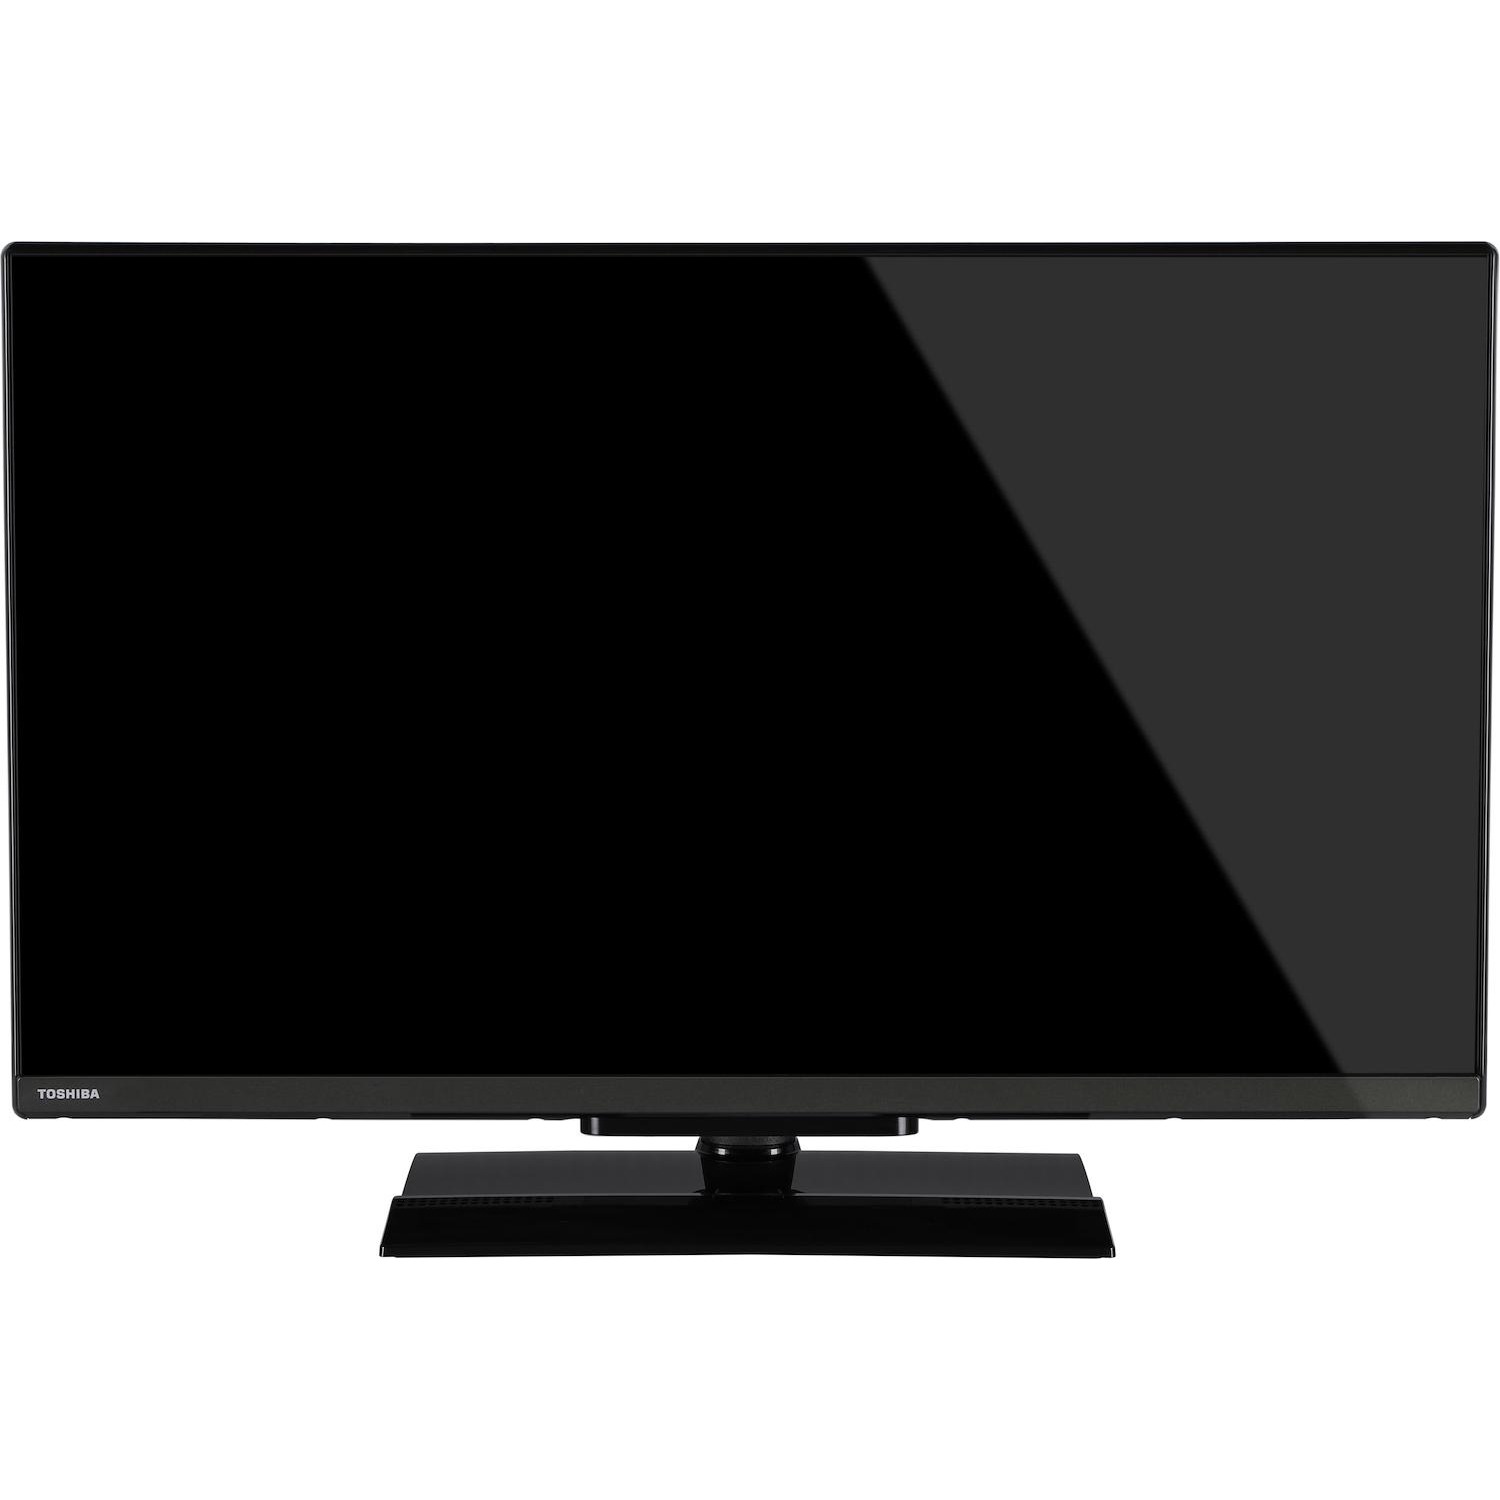 Immagine per TV LED Toshiba 32LV3E63D Calibrato FULL HD da DIMOStore